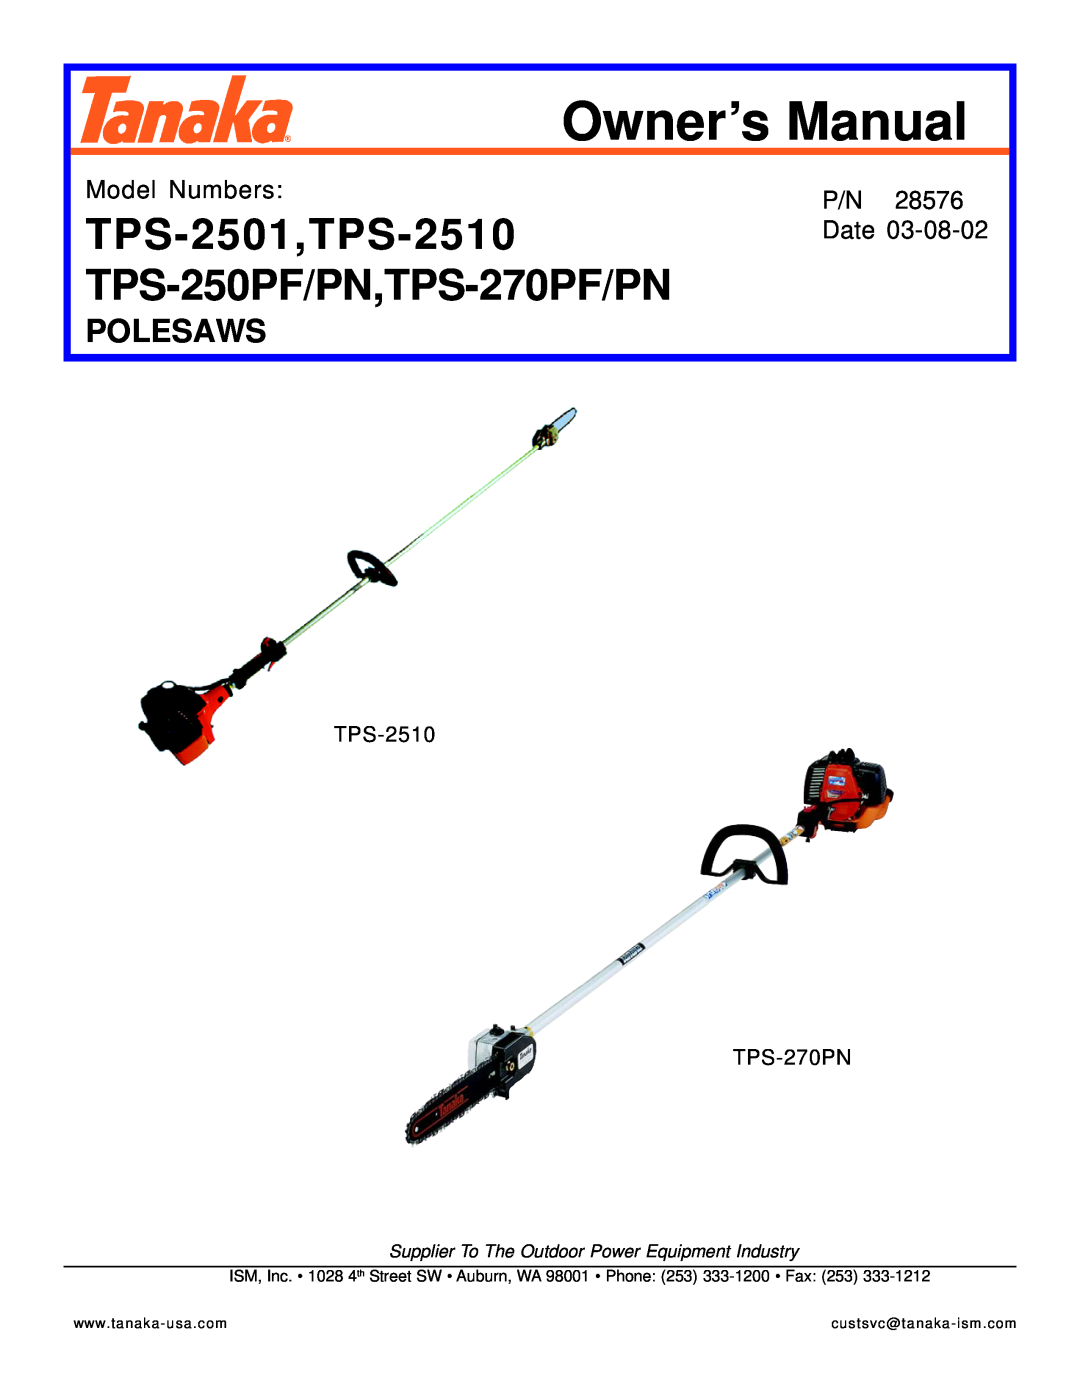 Tanaka TPS-250PN owner manual TPS-2501,TPS-2510, TPS-250PF/PN,TPS-270PF/PN, Polesaws, Model Numbers, Date 